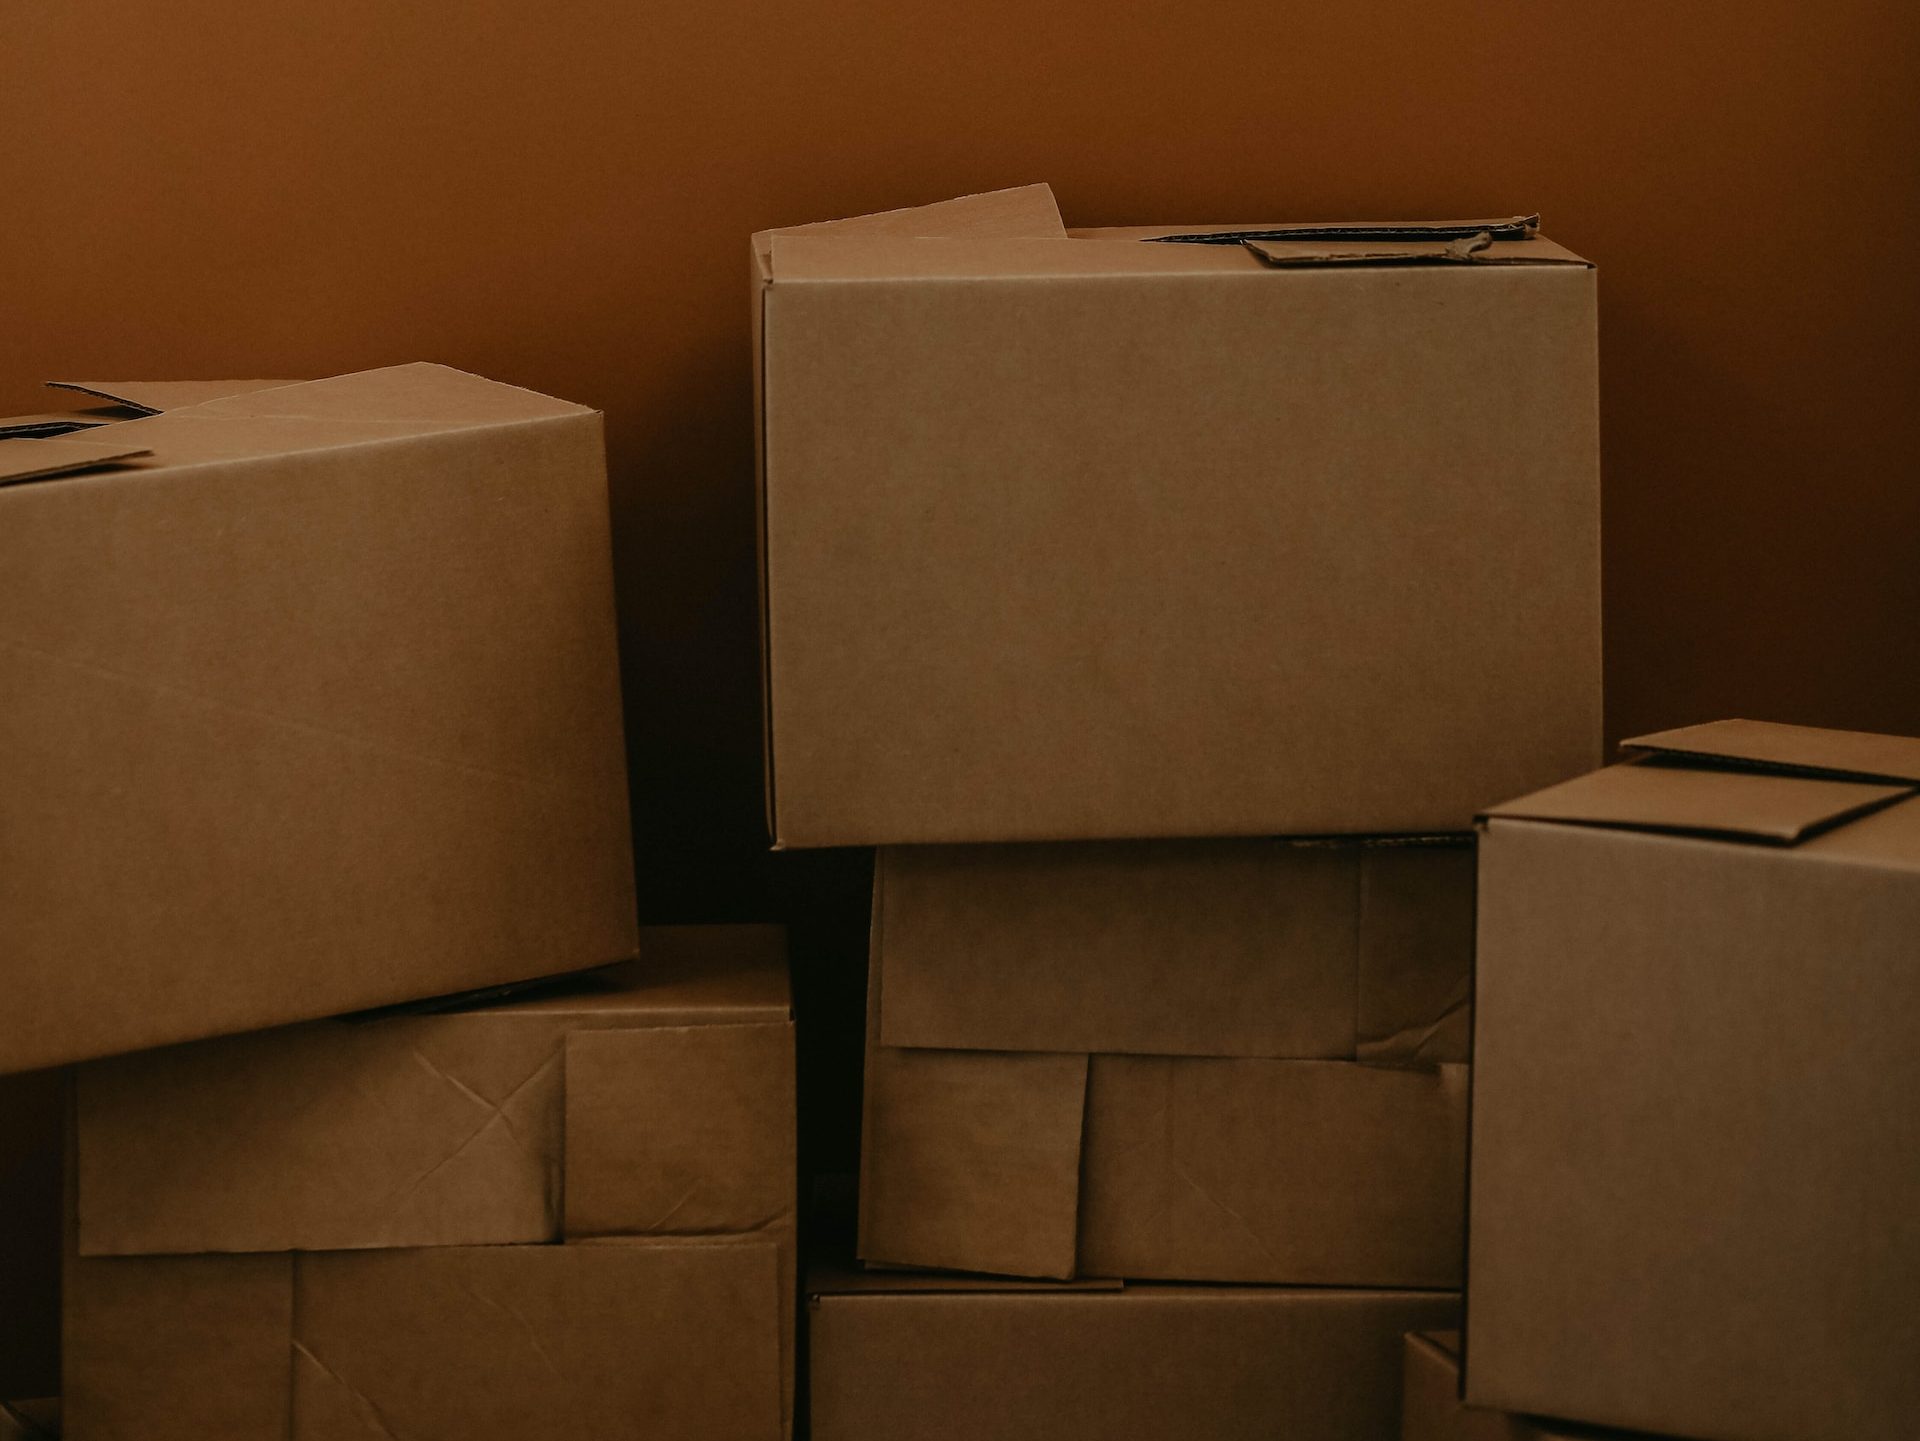 Organización en cajas parte del método de Marie Kondo